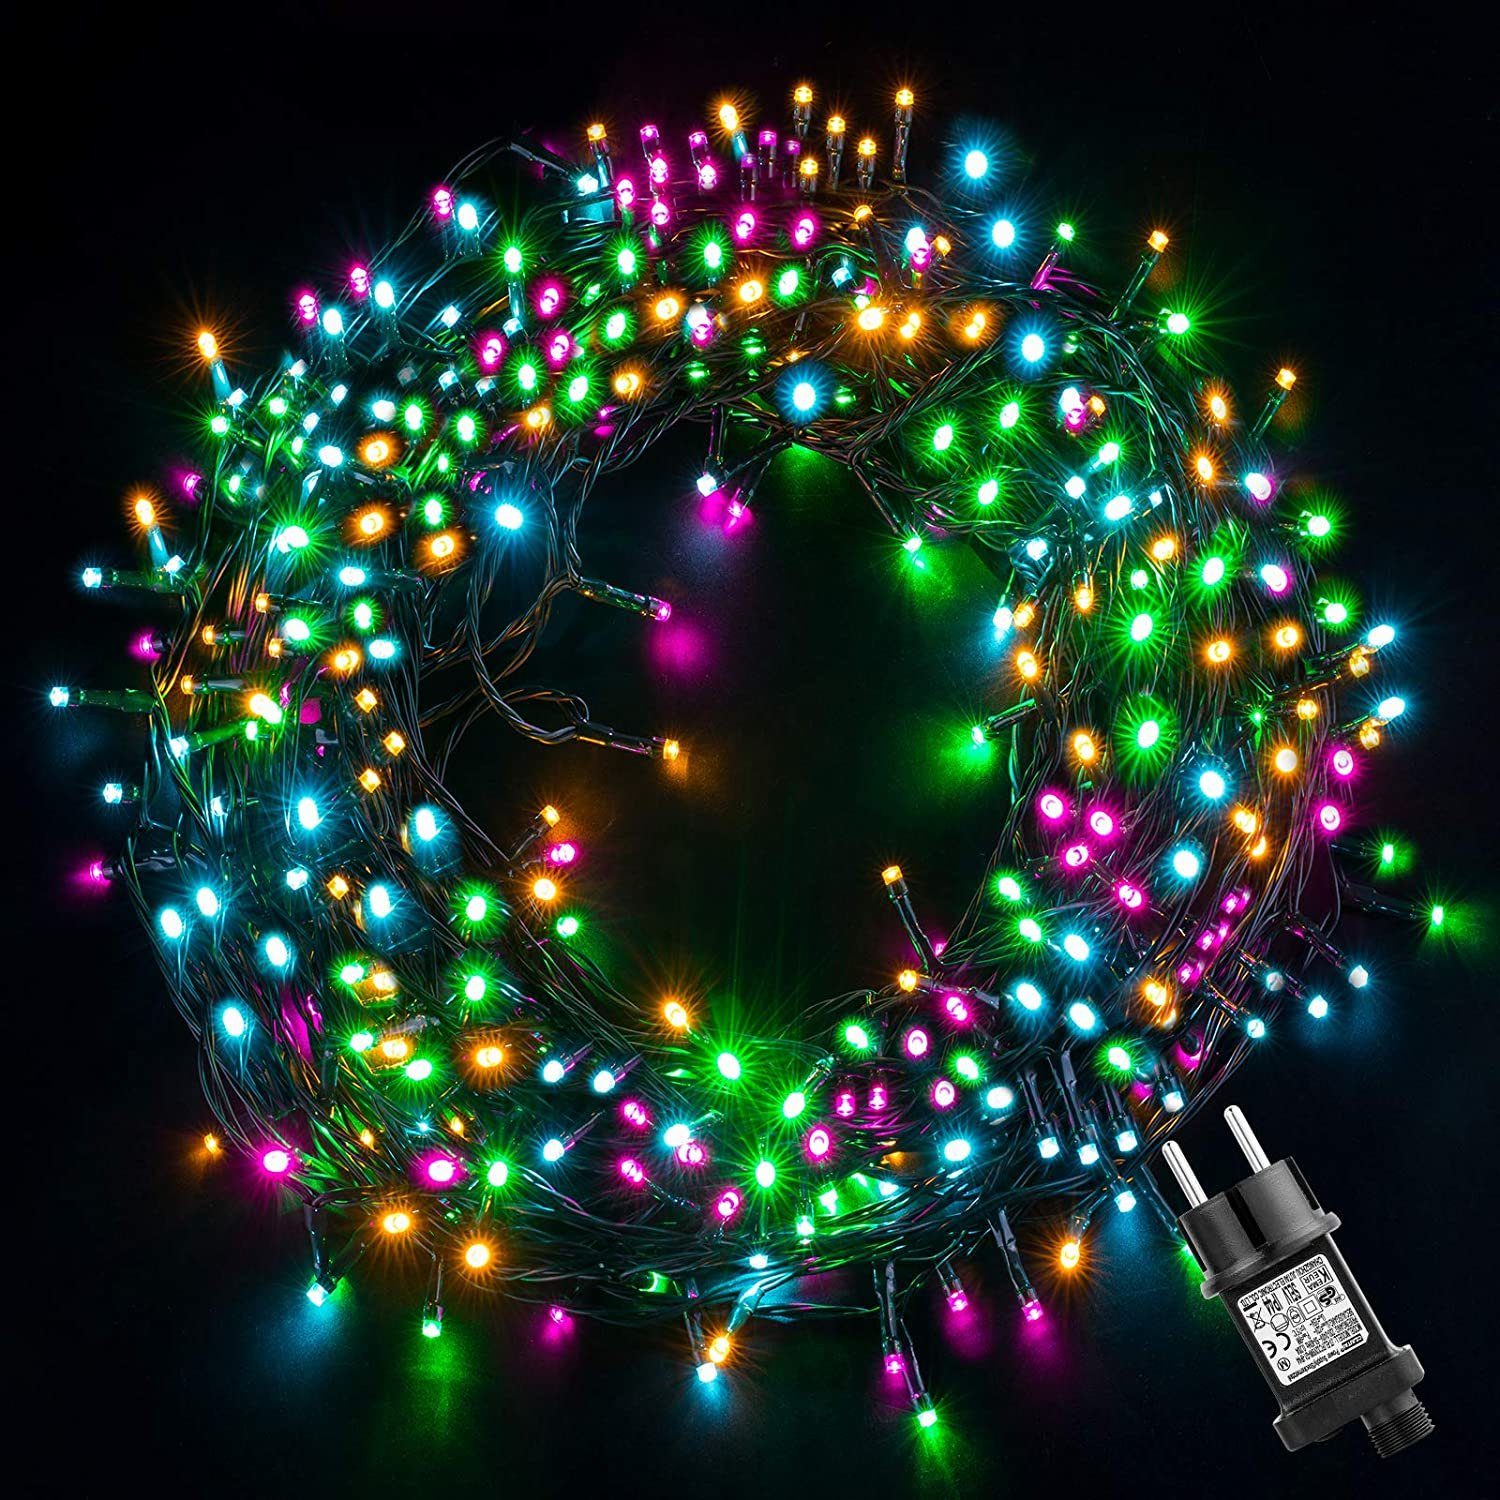 Elegear LED-Lichterkette 20M Bunte LED-Lichtervorhang Weihnachtsdeko für weihnachtsbaum, 200-flammig, EU Stecker 8 Modi Timer Speicherfunktion, IP44